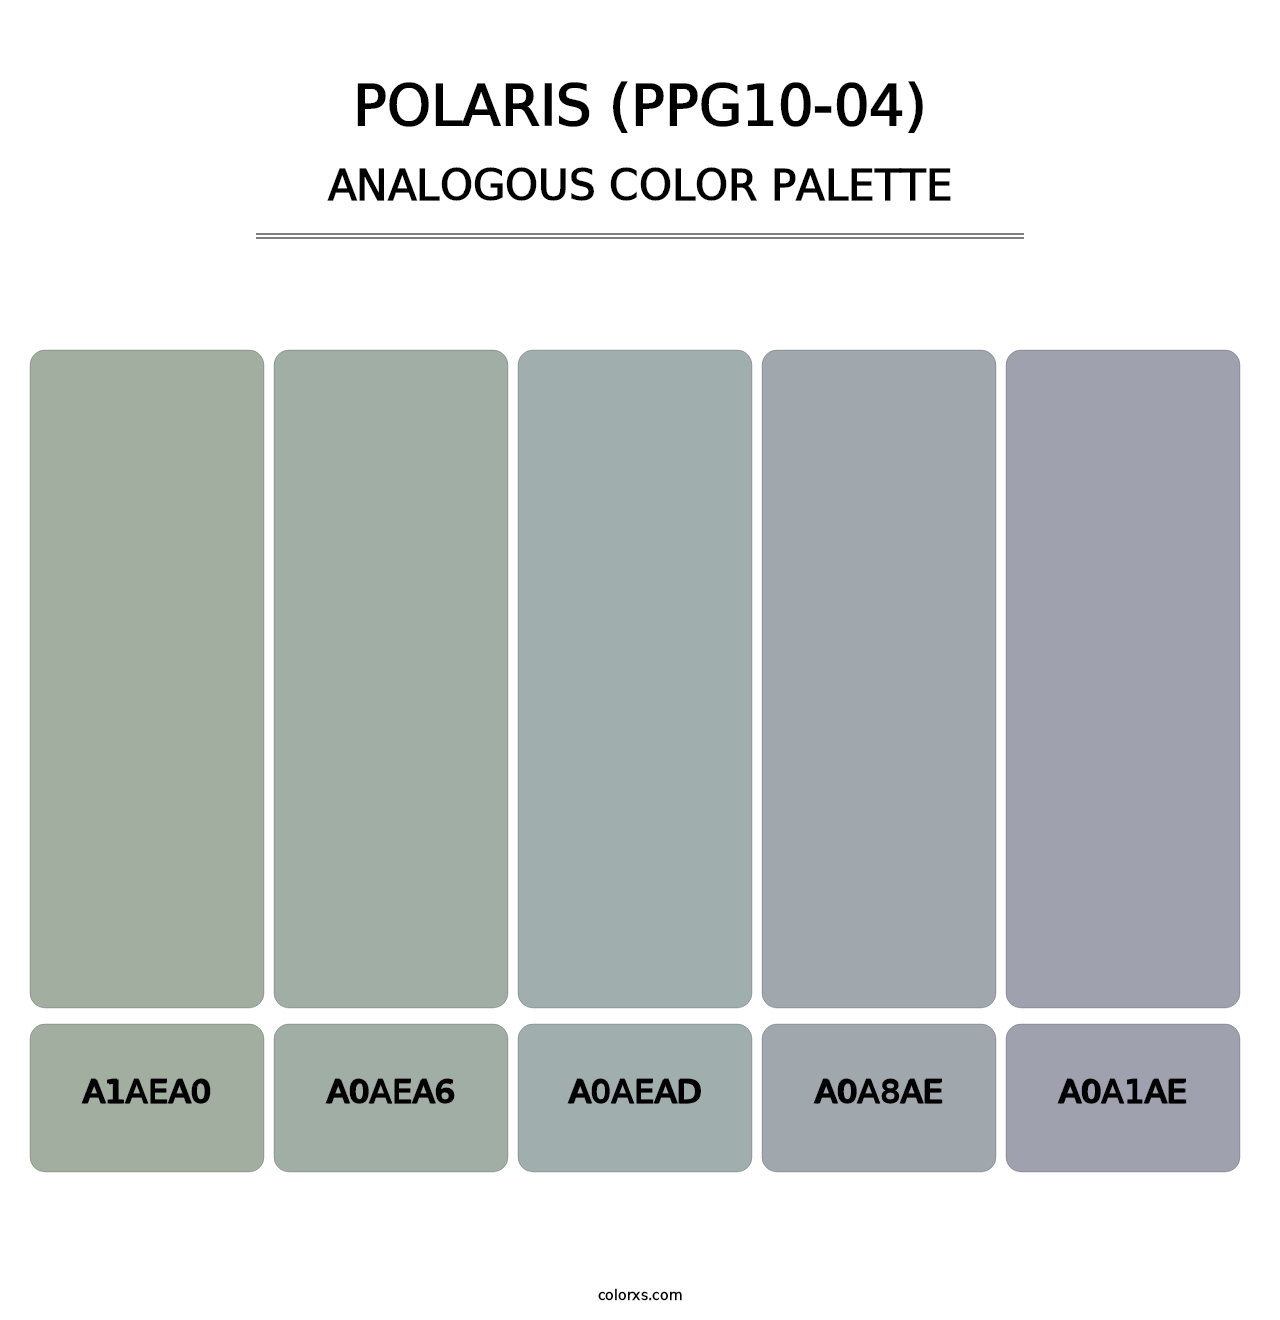 Polaris (PPG10-04) - Analogous Color Palette